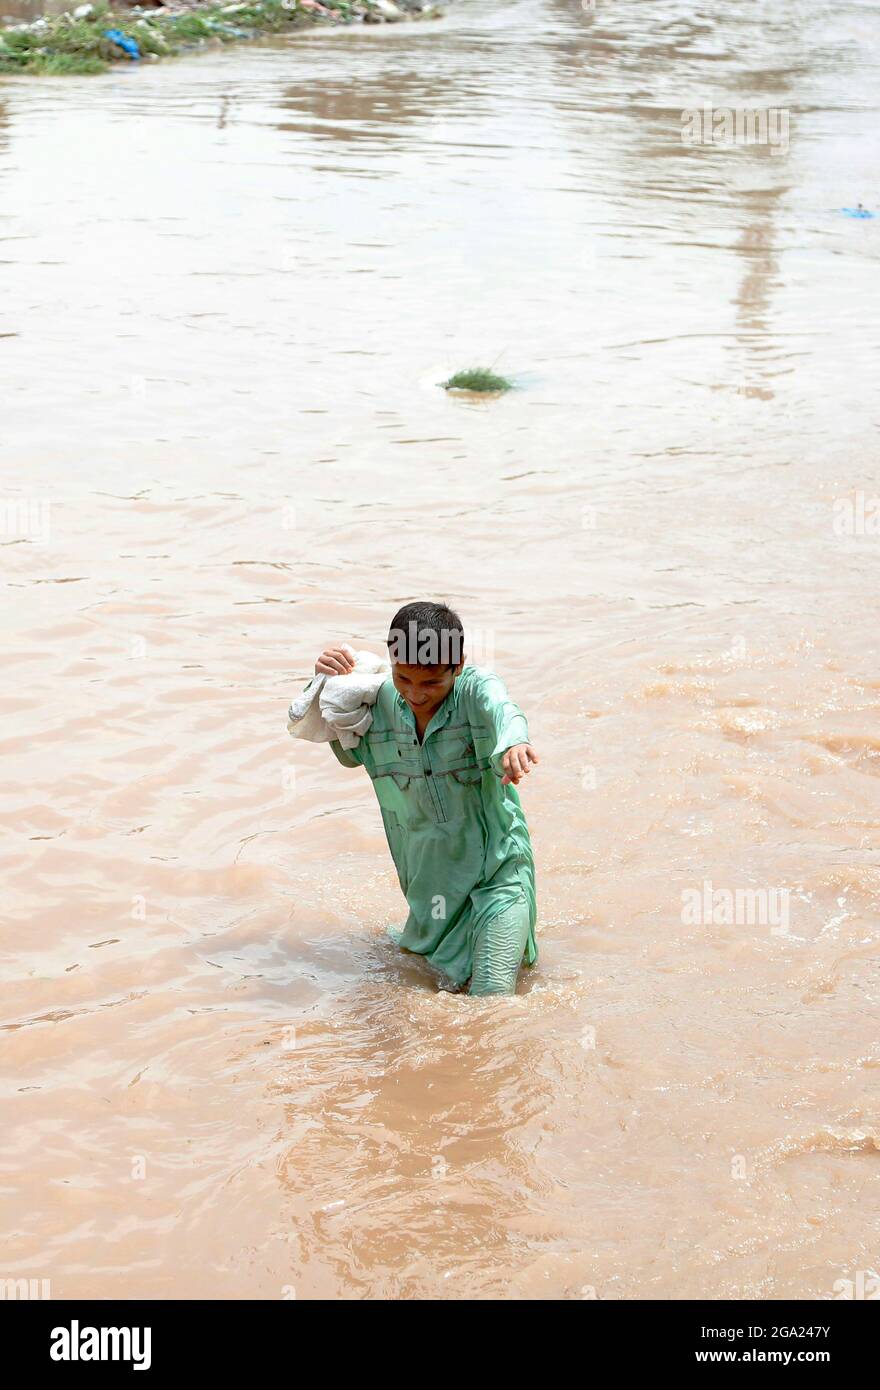 Islamabad. 28 juillet 2021. Un garçon traverse les eaux d'inondation après de fortes pluies à Islamabad, capitale du Pakistan, le 28 juillet 2021. Les autorités pakistanaises ont déclaré mercredi que de fortes pluies ont fait des ravages dans la capitale fédérale du pays, Islamabad, tuant au moins deux personnes et en blessant plusieurs autres. Crédit : Ahmad Kamal/Xinhua/Alamy Live News Banque D'Images